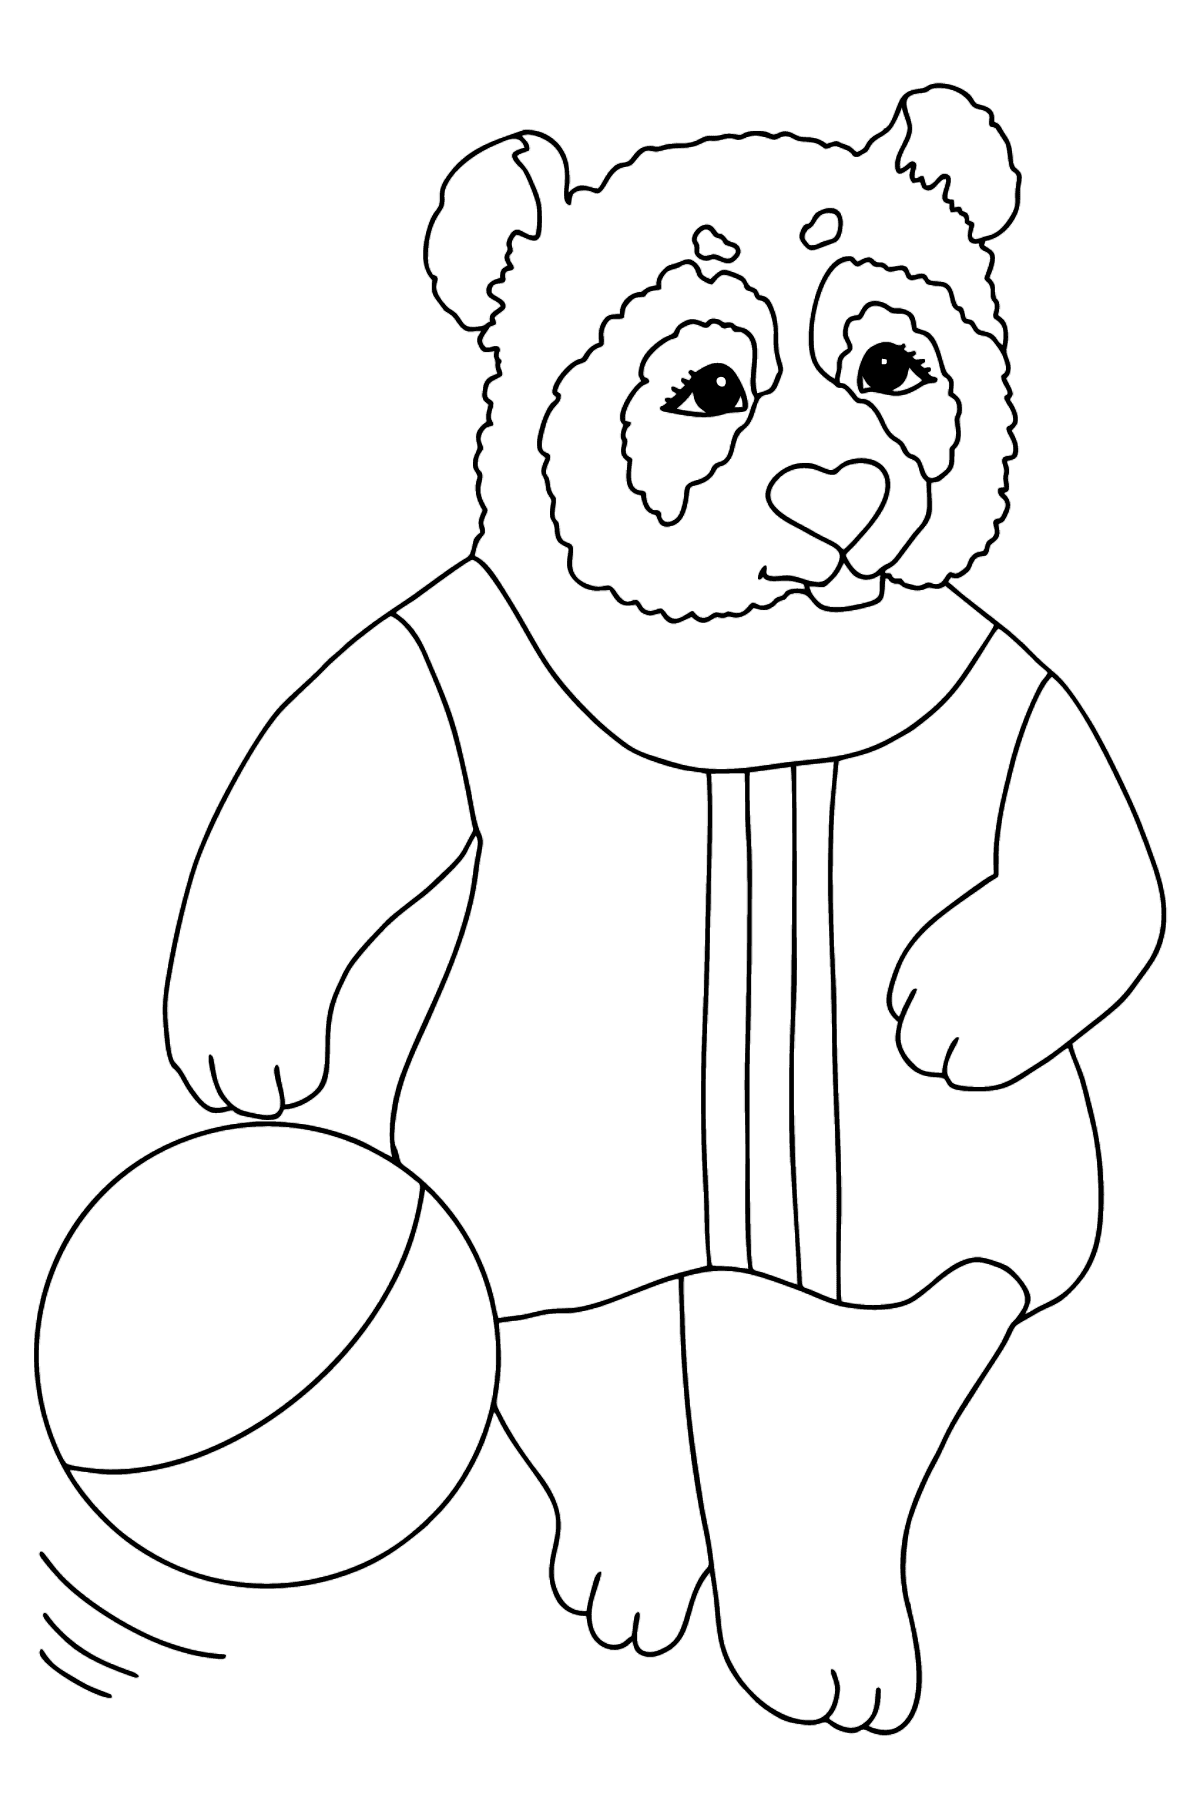 Tegning til fargelegging panda for babyer (vanskelig) - Tegninger til fargelegging for barn